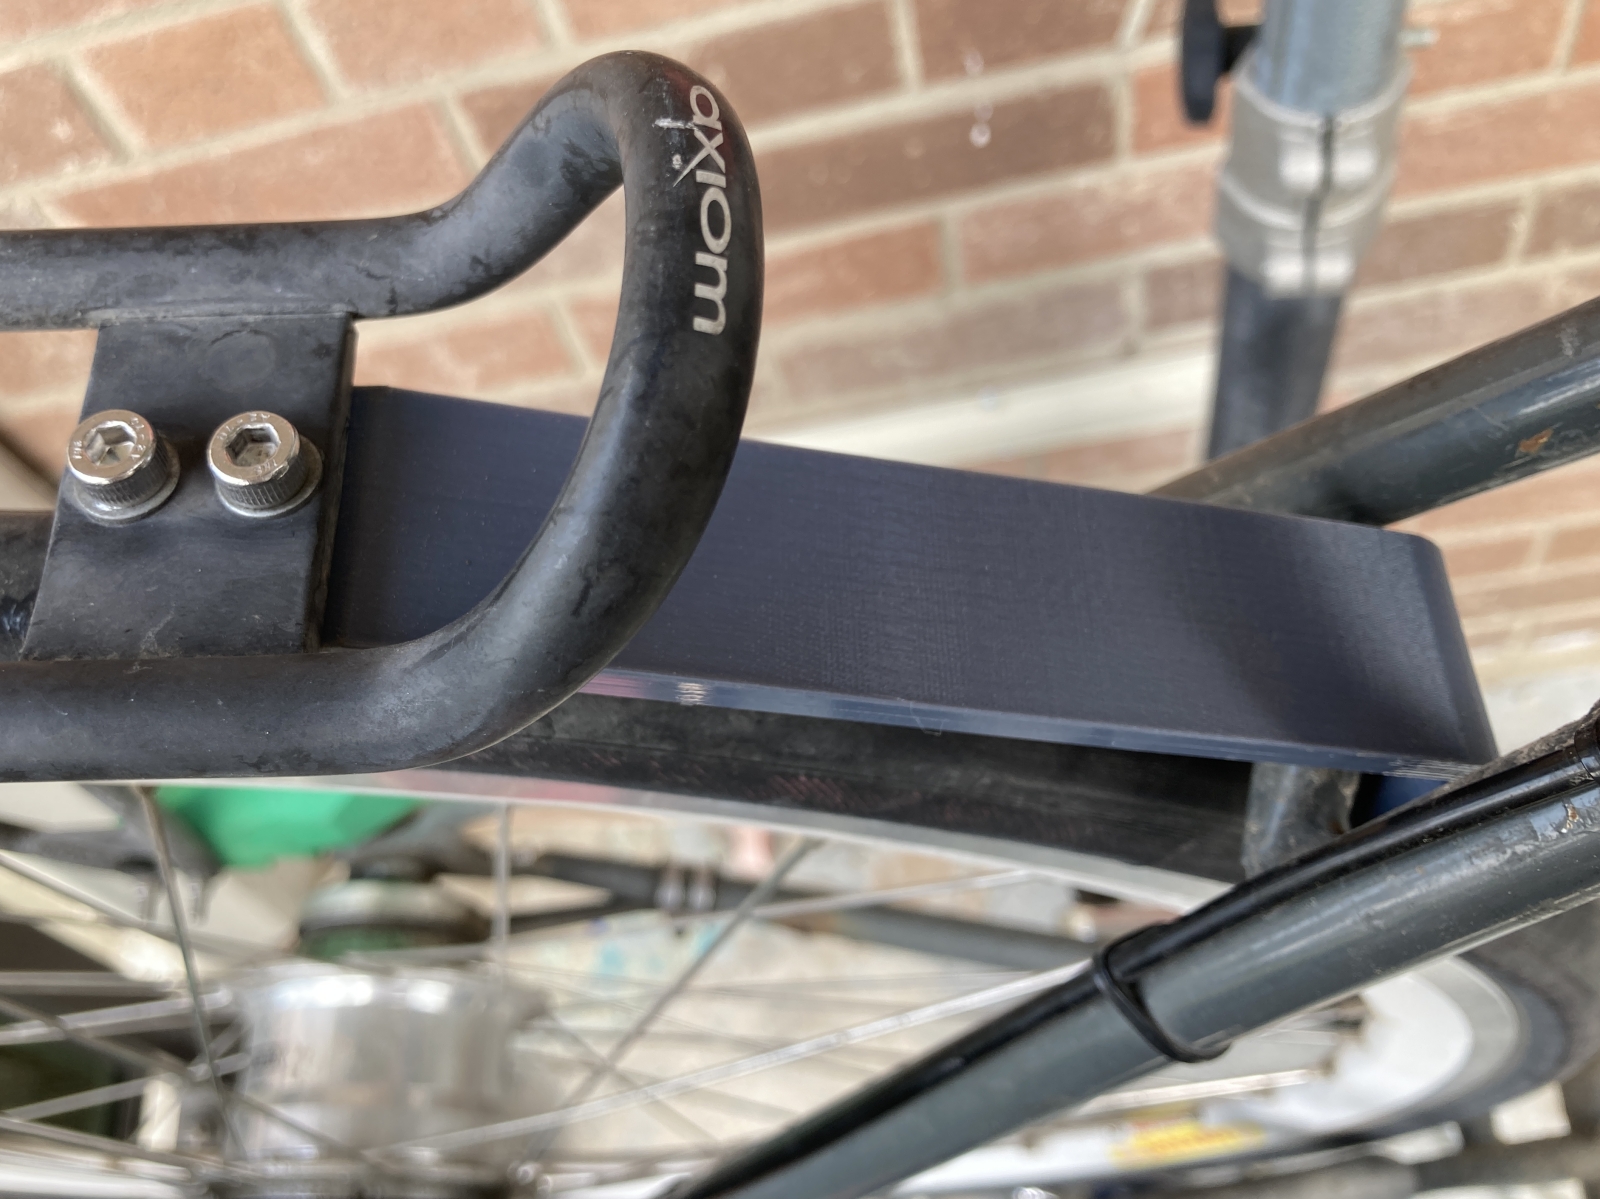 Customizable bike rack connector